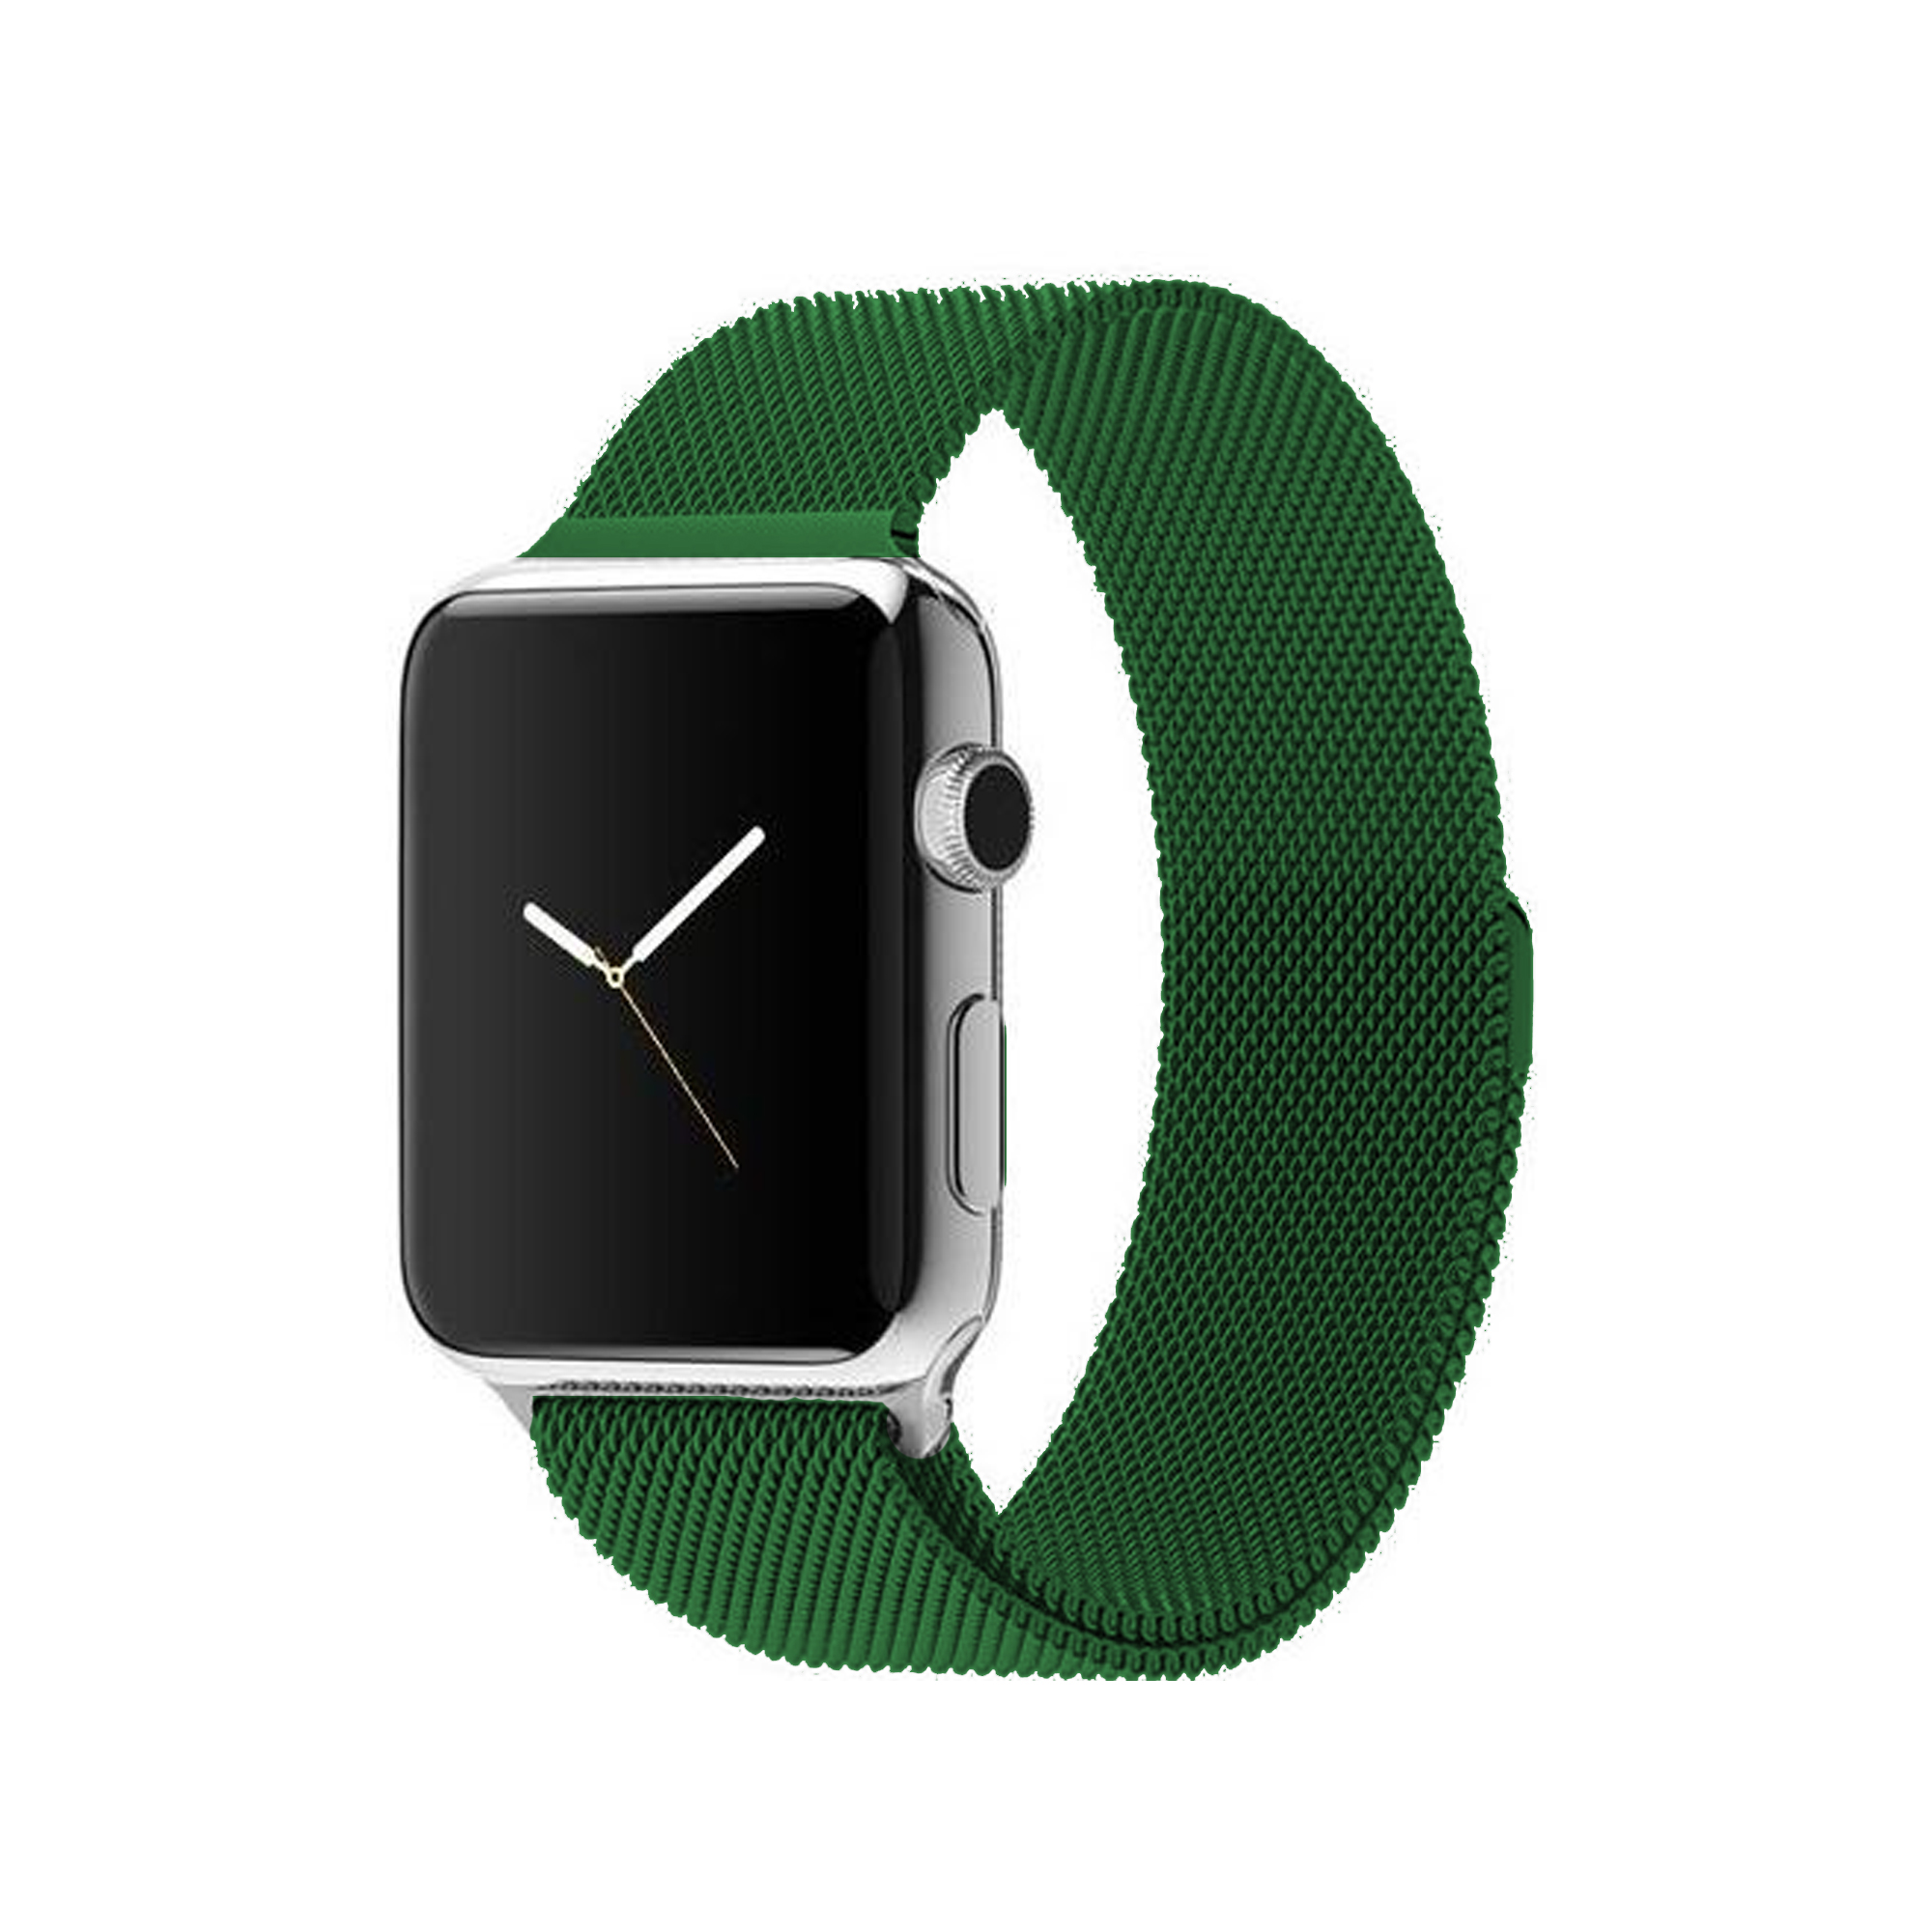 Ремешок из нержавеющей стали COTEetCL W6 Magnet Band для Apple Watch 42/44mm зеленый миланская петля (WH5202-TS)